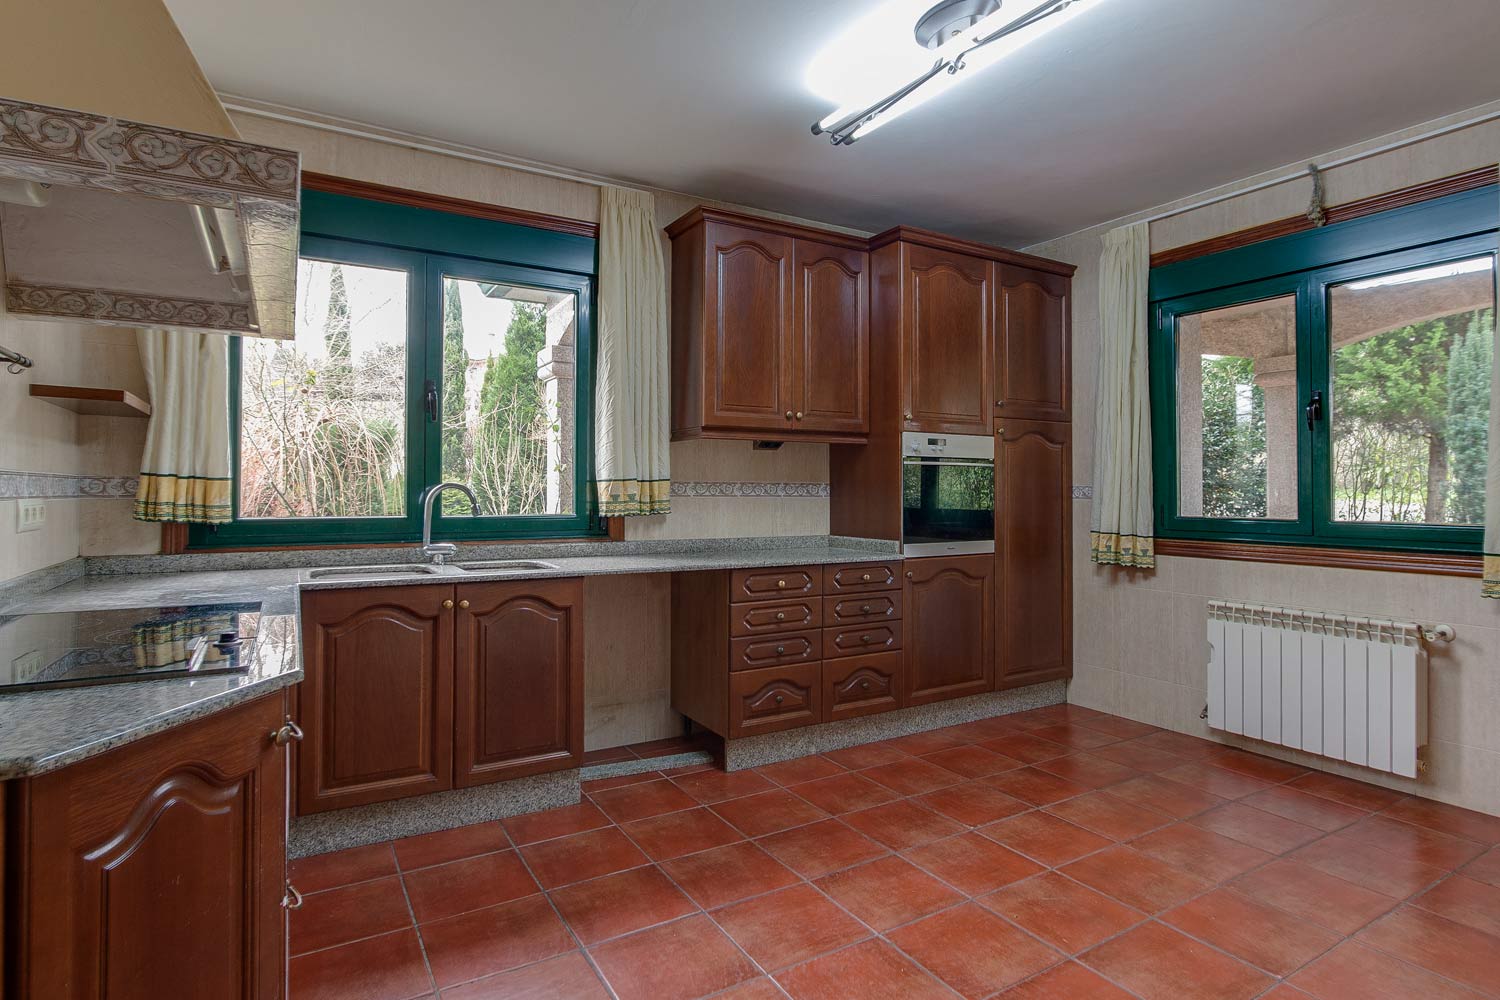 Espacio vacío_ cocina clásica de madera en vivienda unifamiliar en Bergondo con dos ventanas de carpintería verde